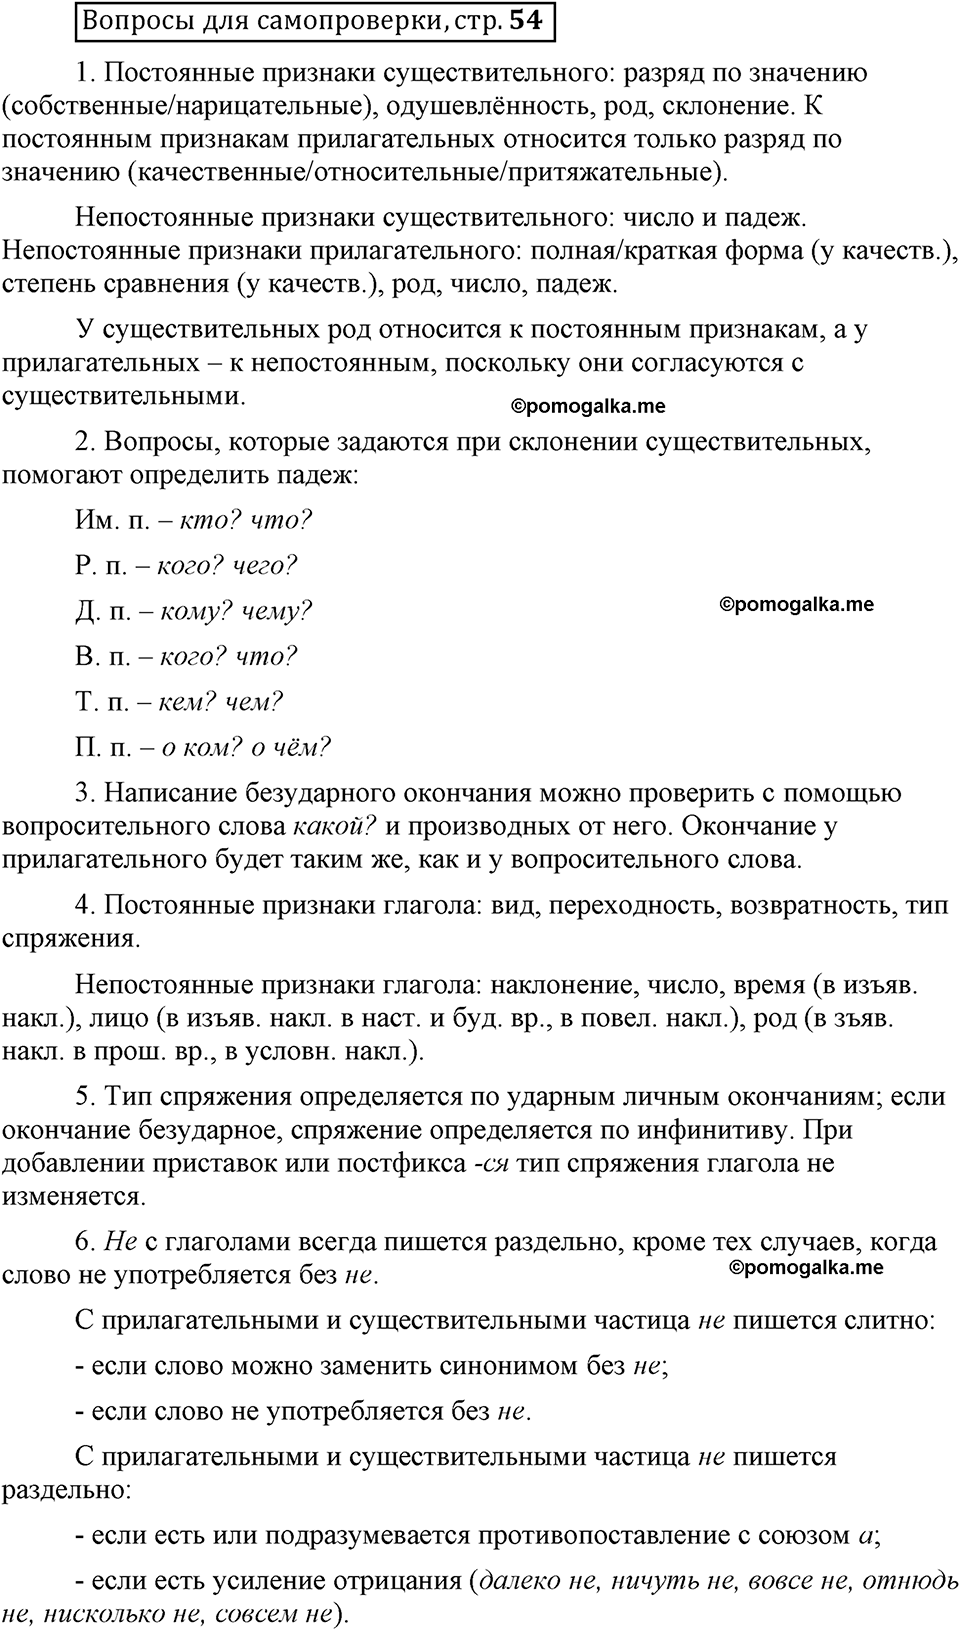 Страница 54 вопросы для самопроверки русский язык 6 класс Шмелёв